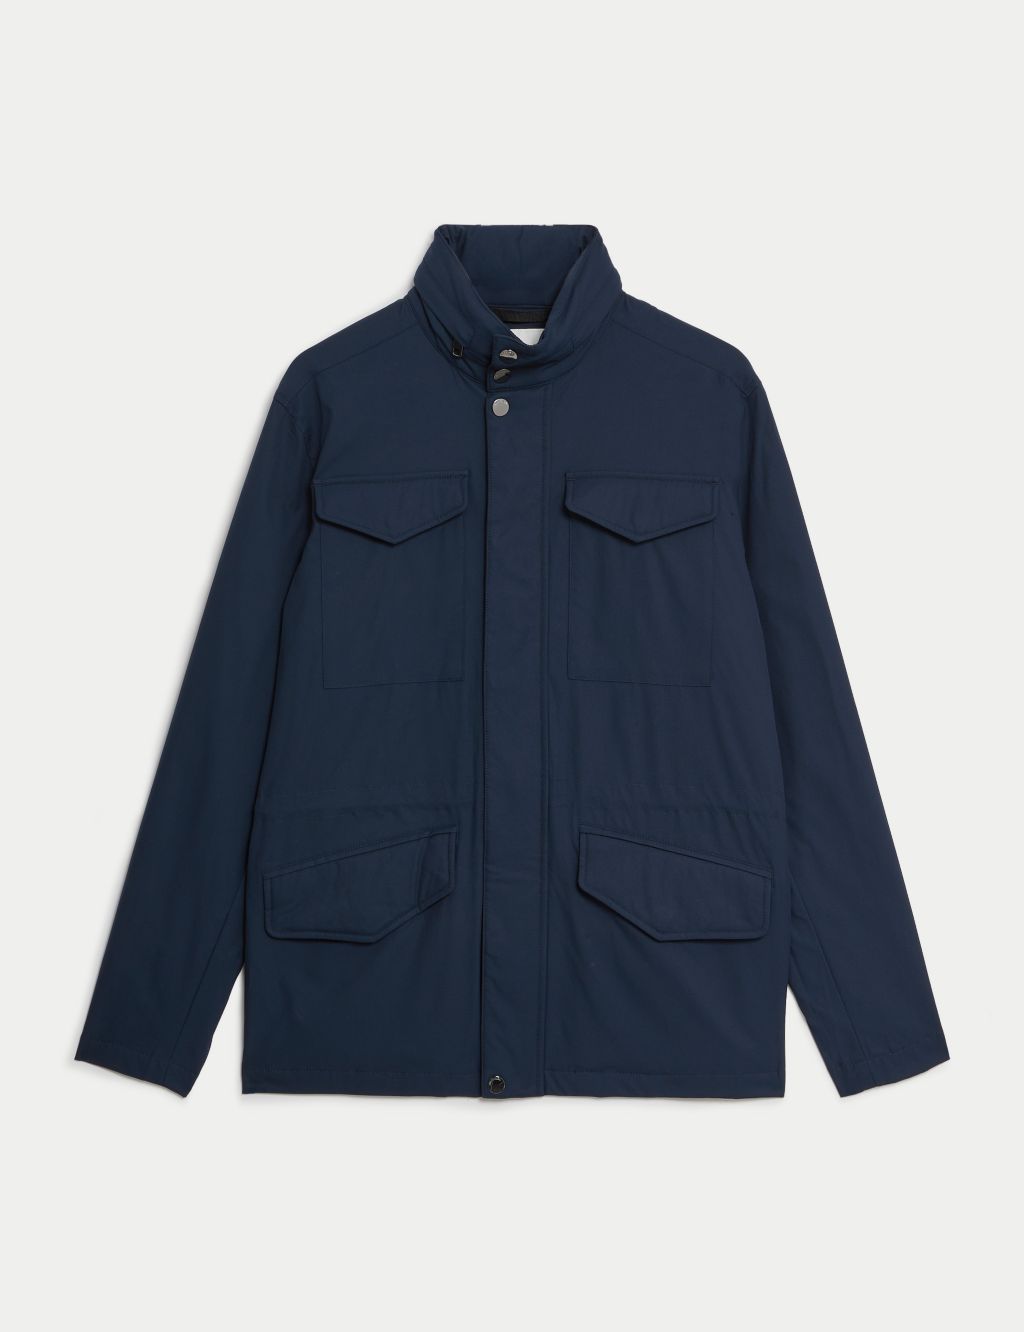 Men's Utility Jackets & Coats | M&S